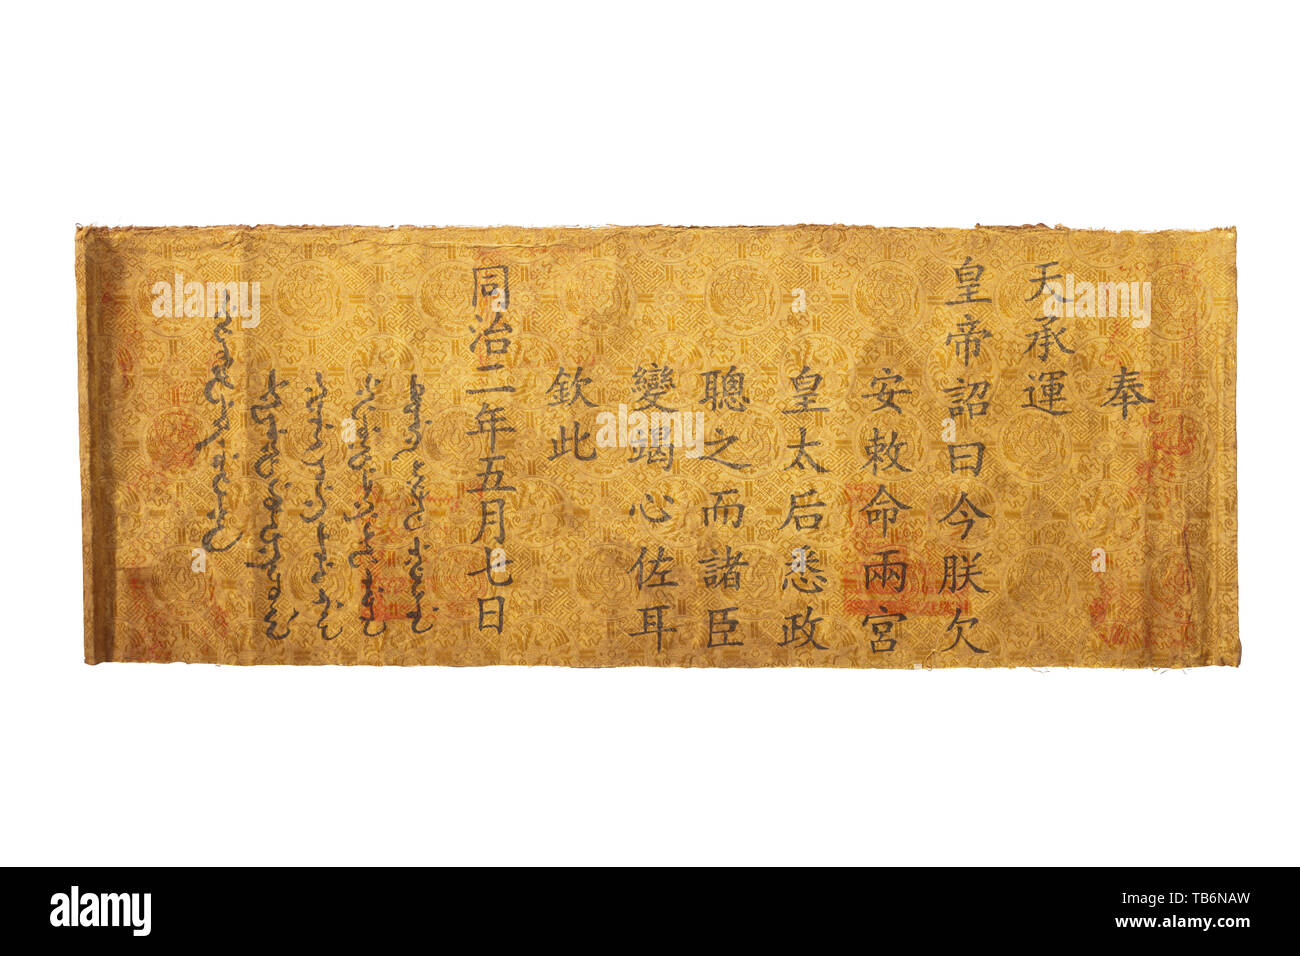 Un décret publié par l'Empereur Tongzhi (1856 - 1875), dynastie des Qing, datée du 1863, pour tous les ministères d'accorder les deux mères (impératrice Cixi et Cian, l'Est et l'ouest de l'Impératrice Dowagers) leur plein appui, comme ils étaient de prendre en charge le règne alors que le jeune empereur était malade. Belle calligraphie, Chinois Han et mandchou avec plusieurs sceaux officiels sur l'étoffe de soie jaune-or sur papier, les bords légèrement en lambeaux. Dimensions 80 x 30 cm. Lorsque Tongzhi était âgé de cinq ans, il suivit son père à Xianfeng le trône. Jusqu'à sa venue de l'âge de , Additional-Rights Clearance-Info-Not-Available- Banque D'Images